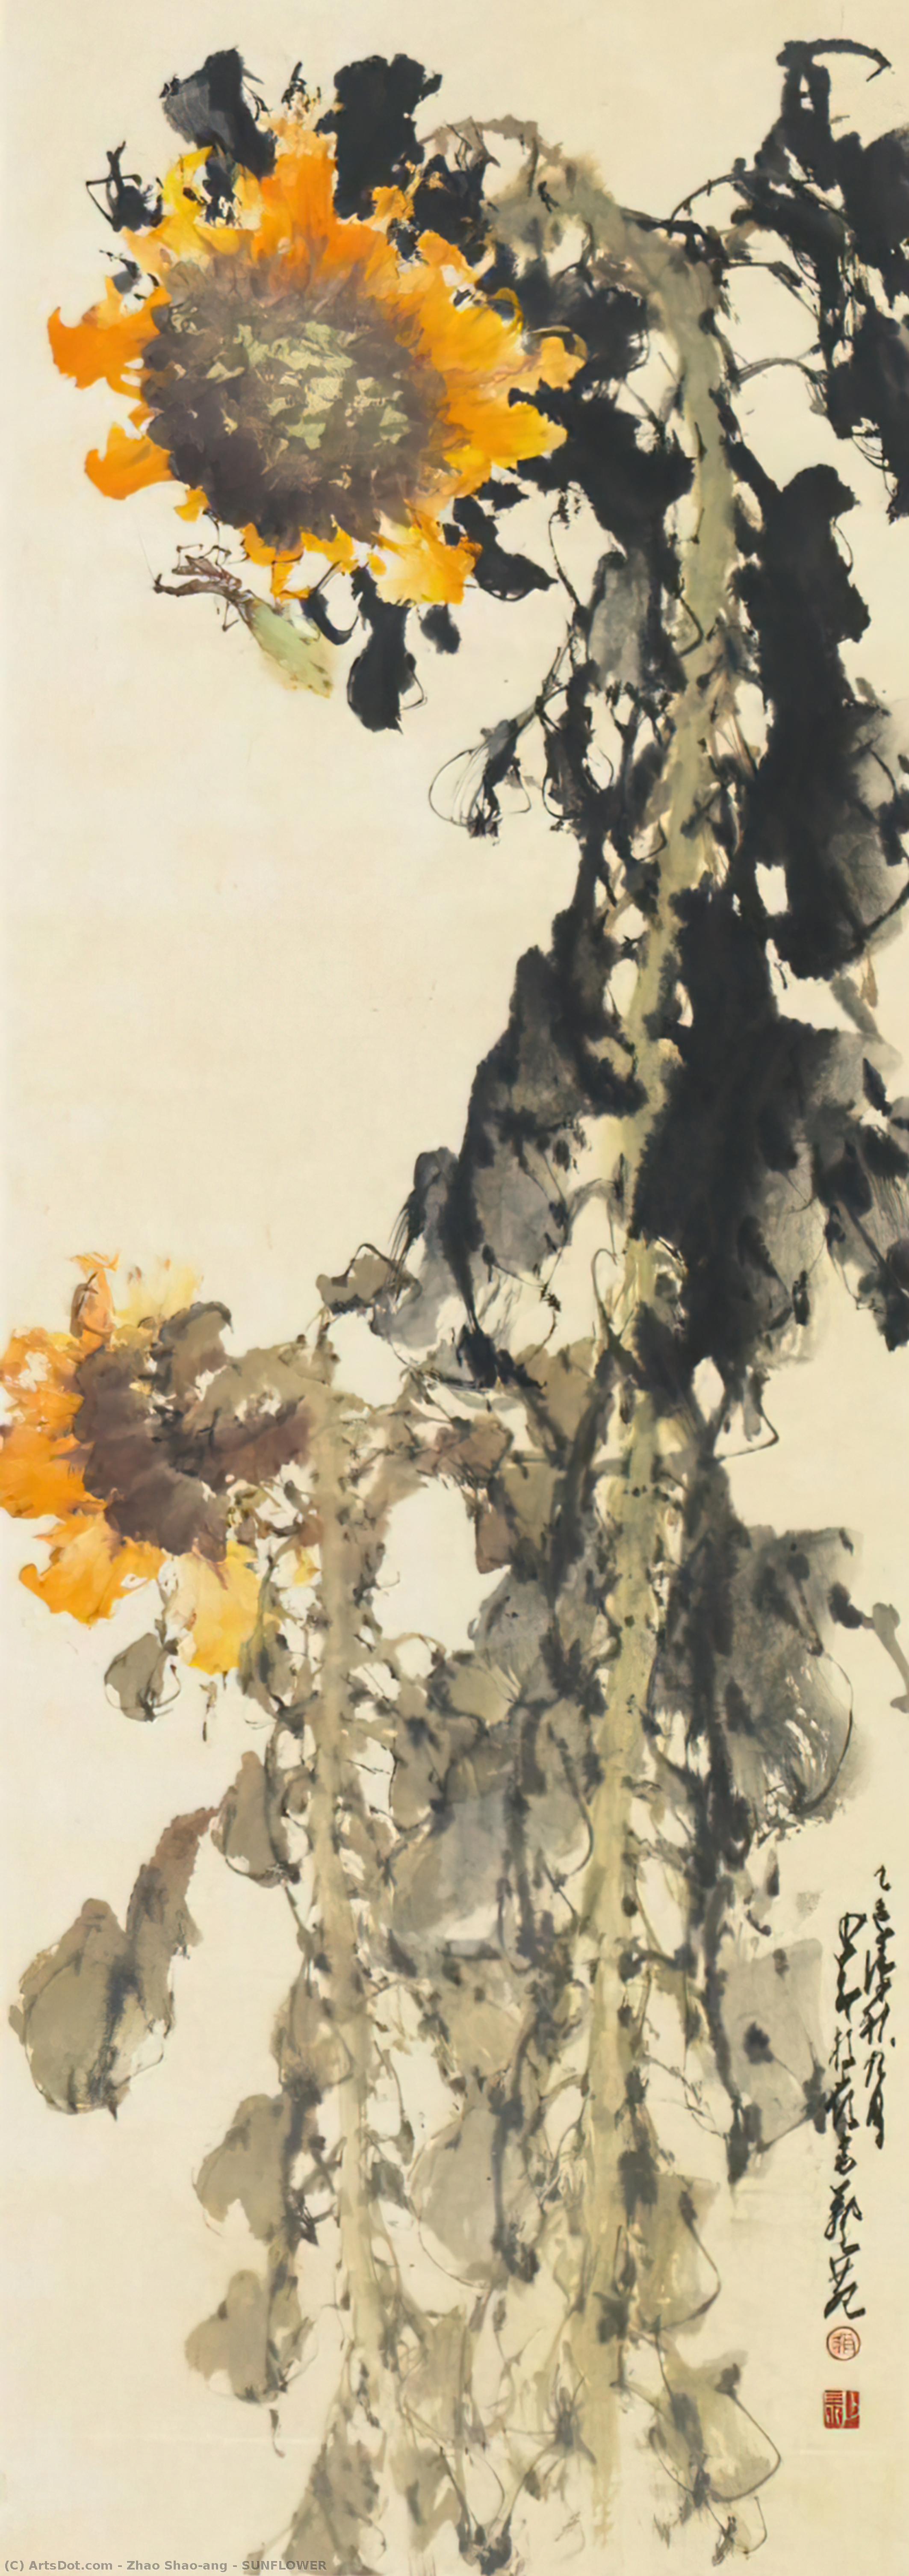 WikiOO.org - Encyclopedia of Fine Arts - Lukisan, Artwork Zhao Shao'ang - SUNFLOWER